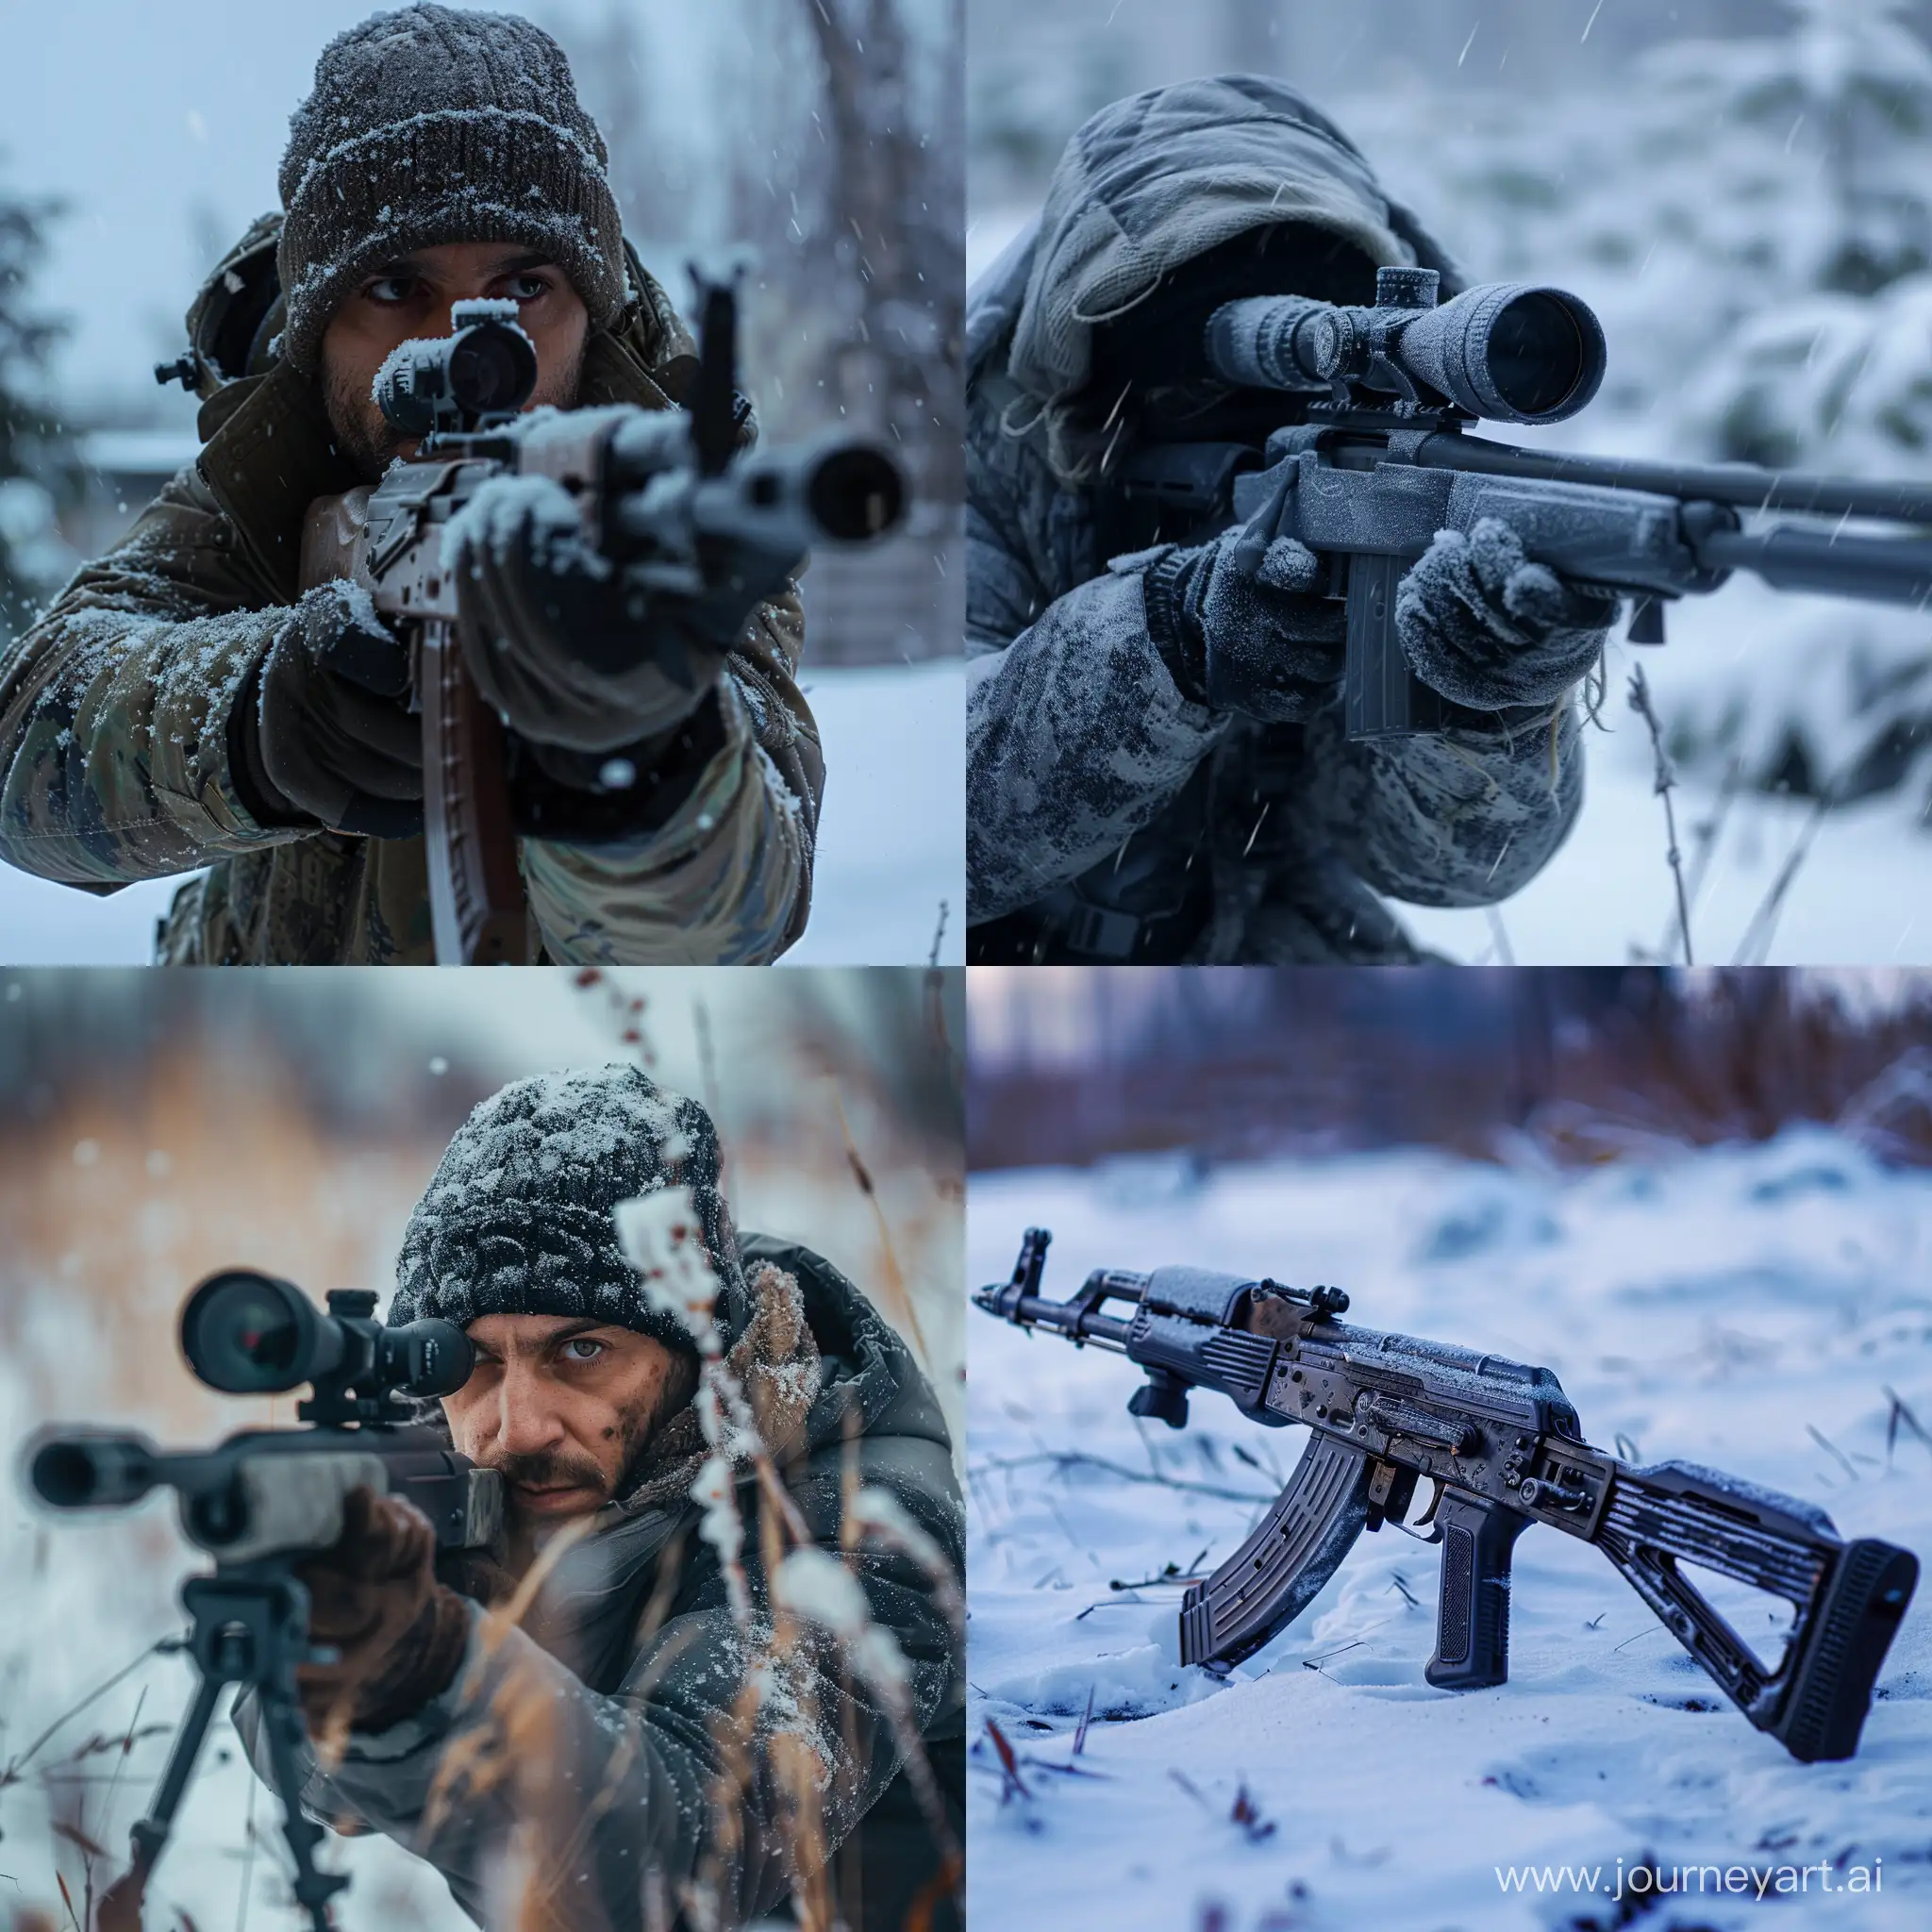 Russian-Sigma-Male-Abdullah-Nazzal-Holding-Gun-on-Winter-Night